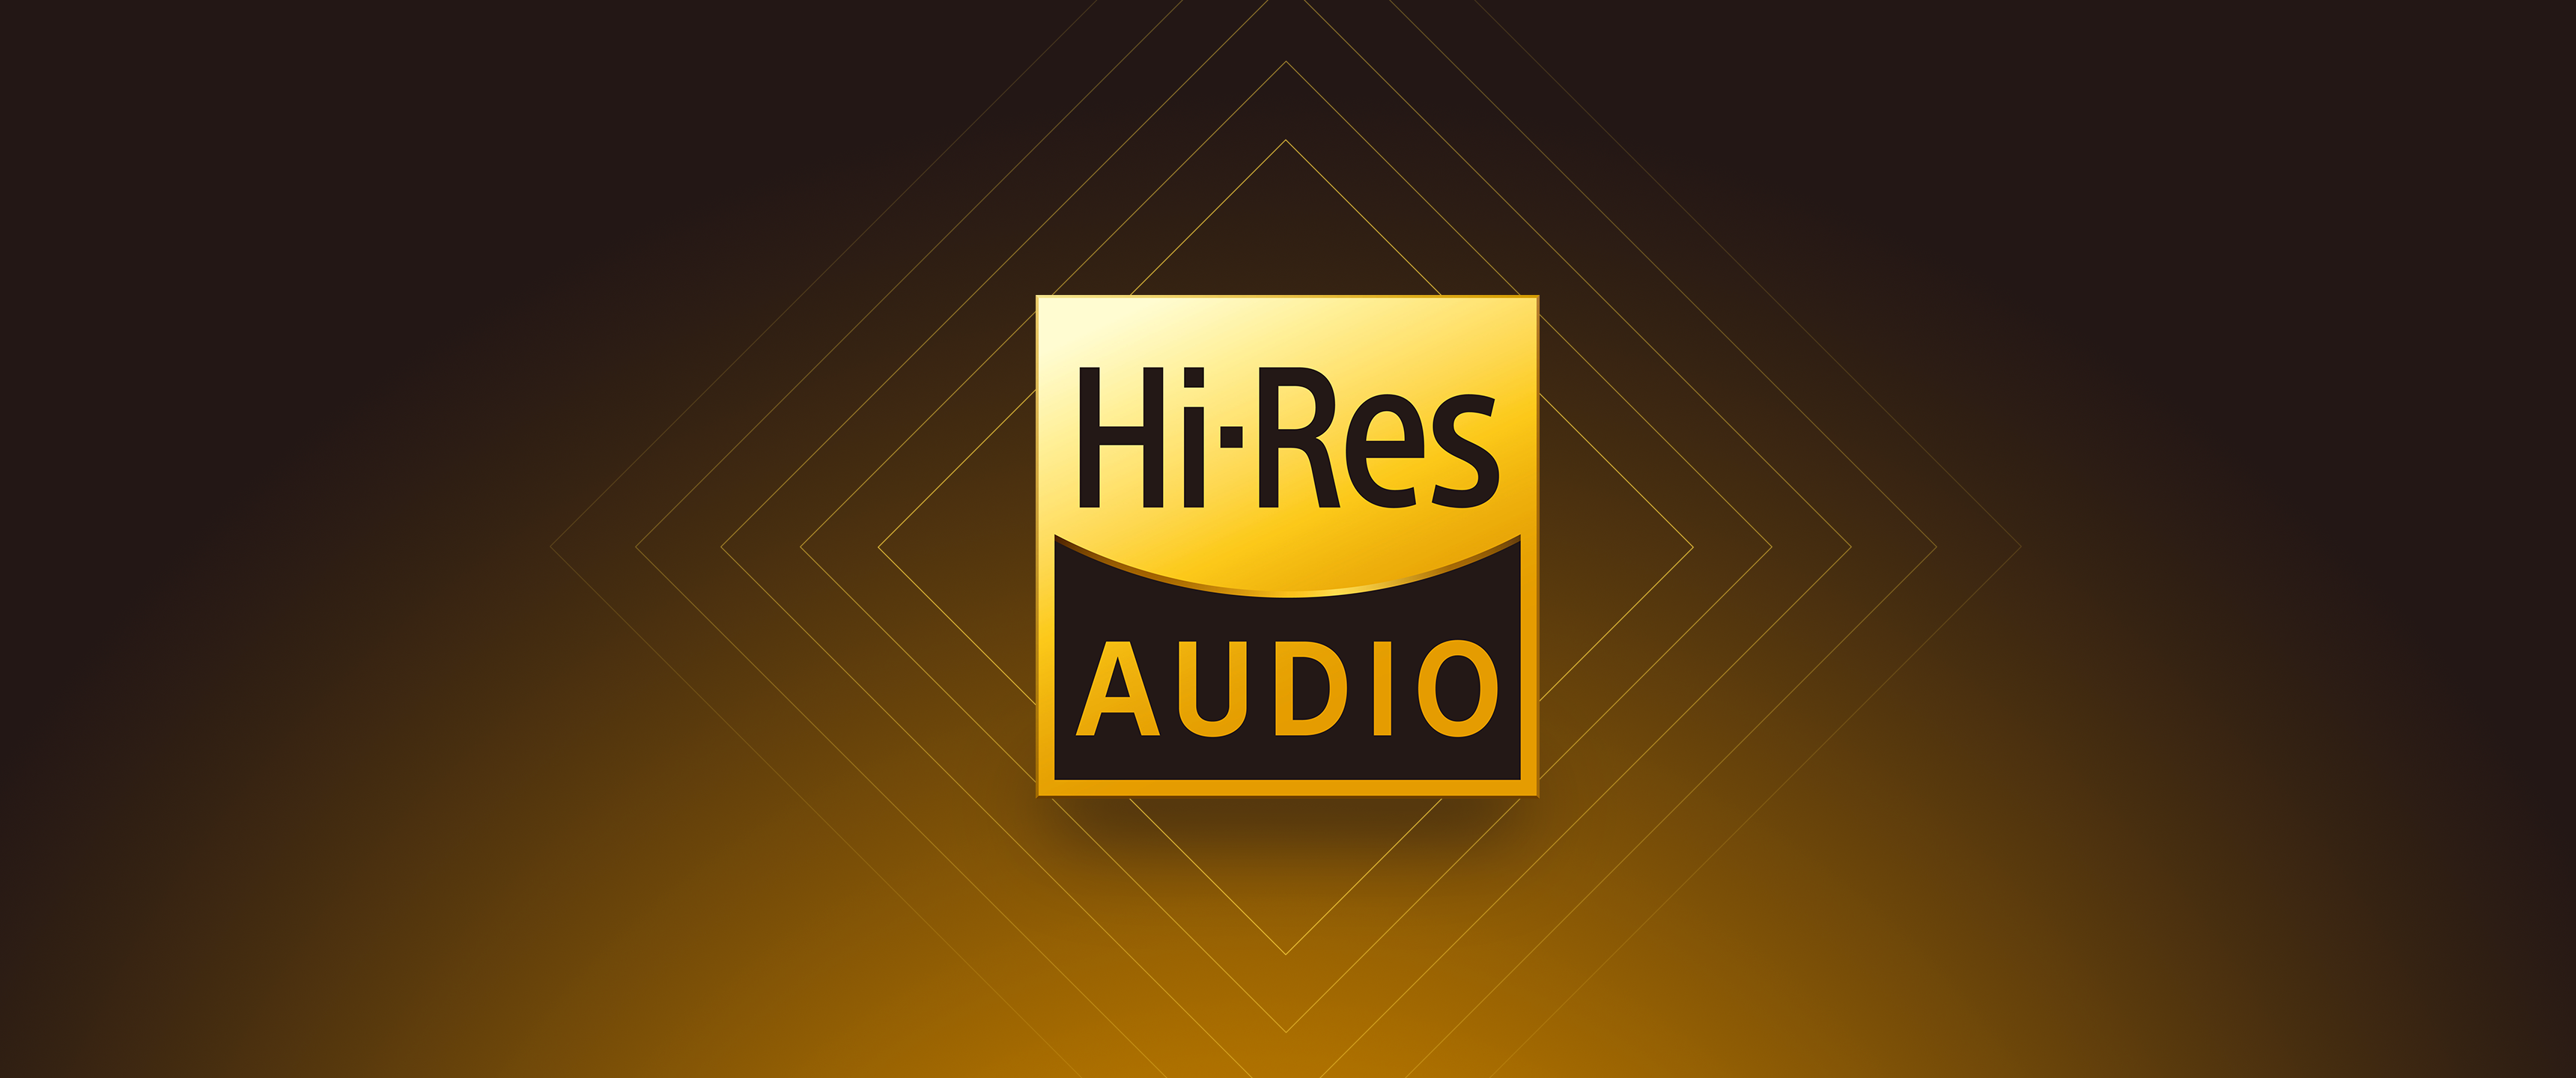 Audio Yellow Logo 3440x1440